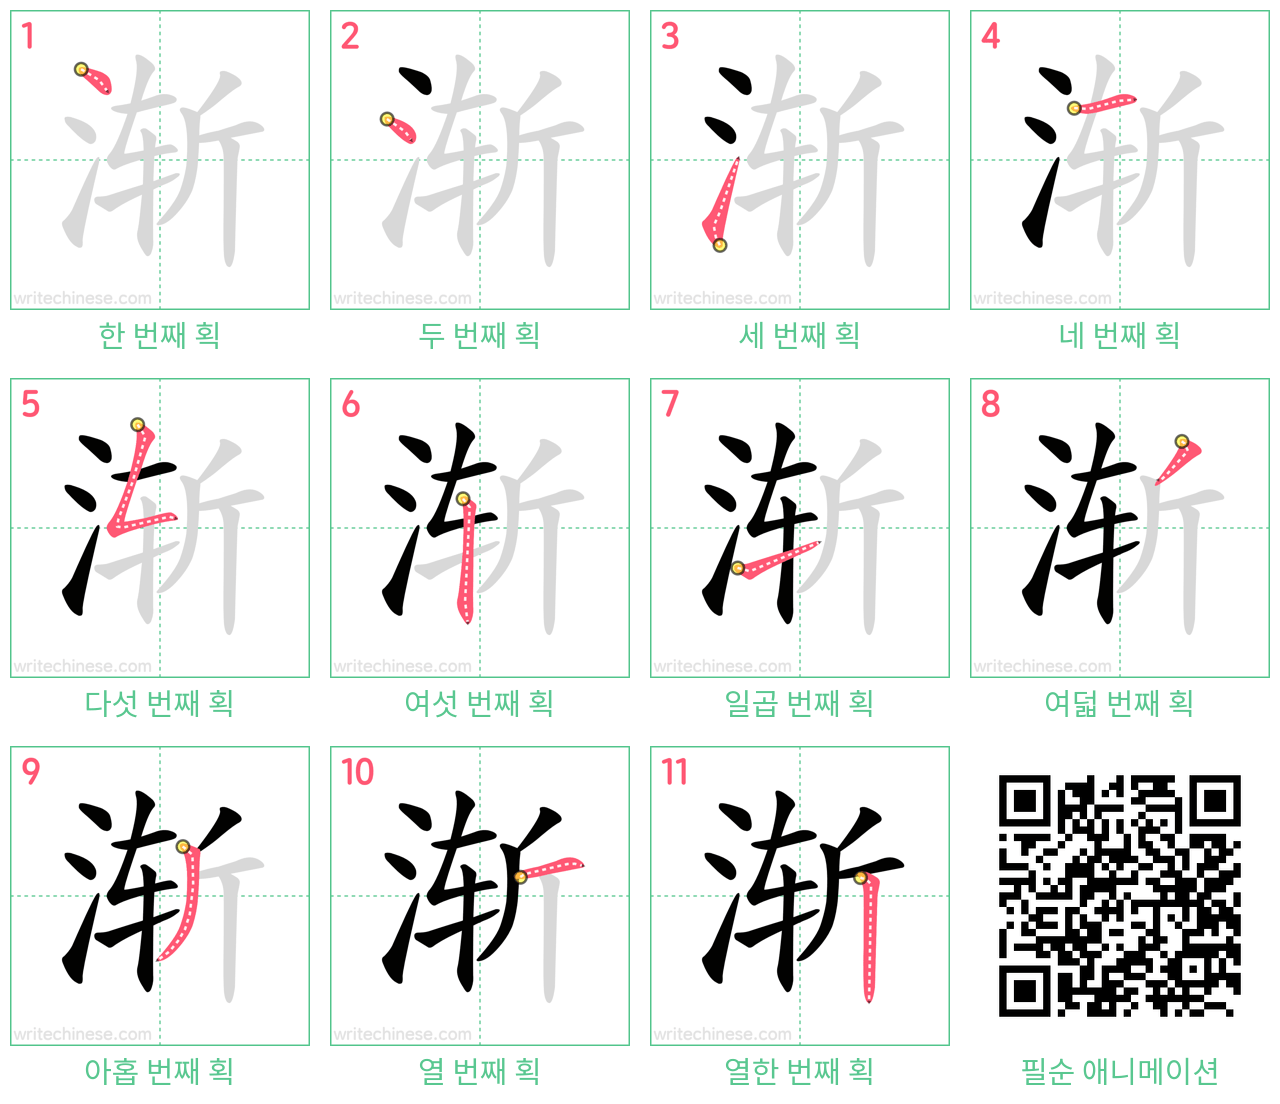 渐 step-by-step stroke order diagrams